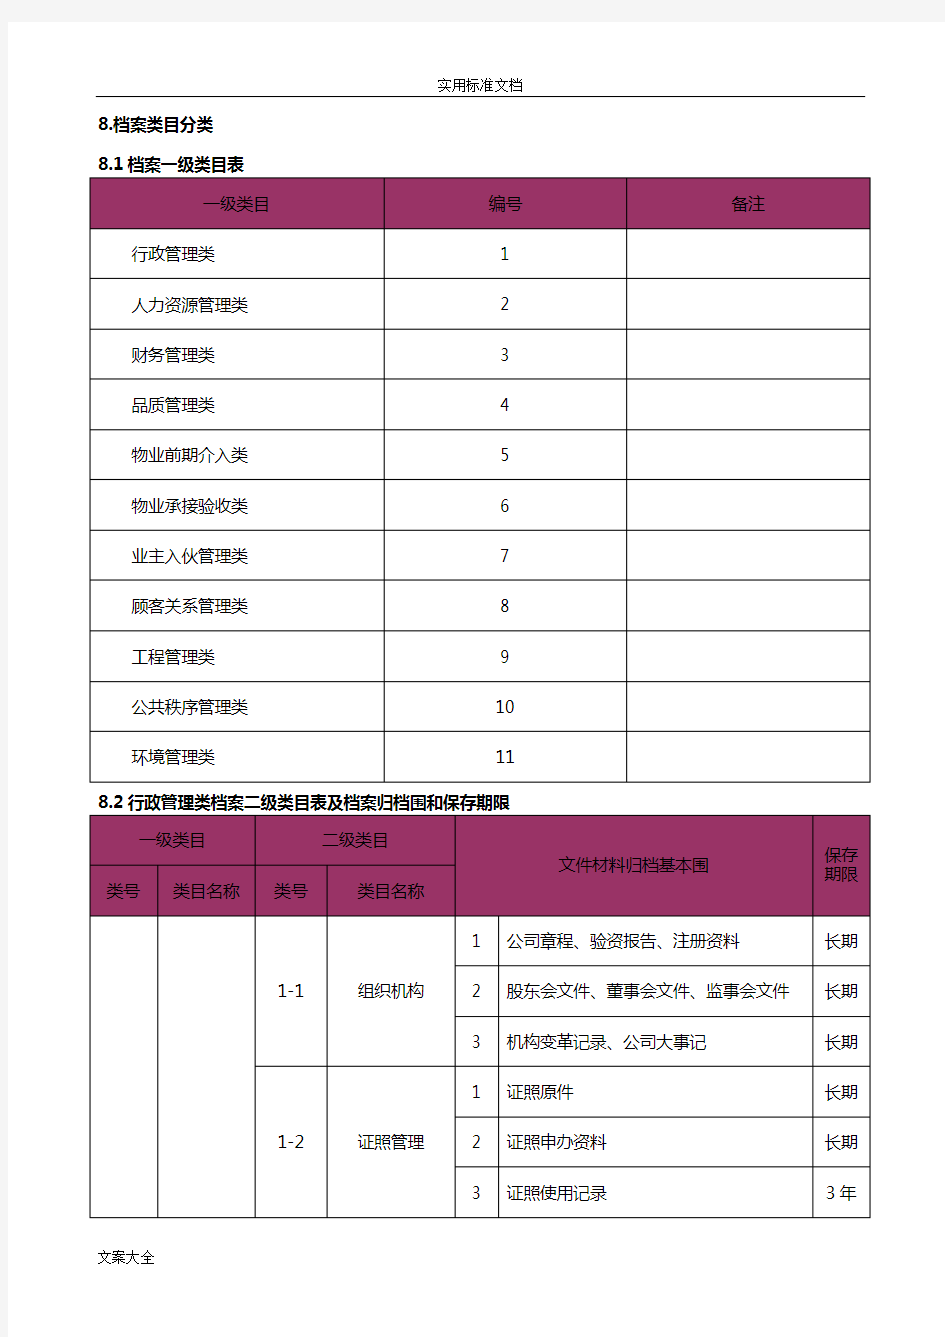 物业公司管理系统档案管理系统分类表